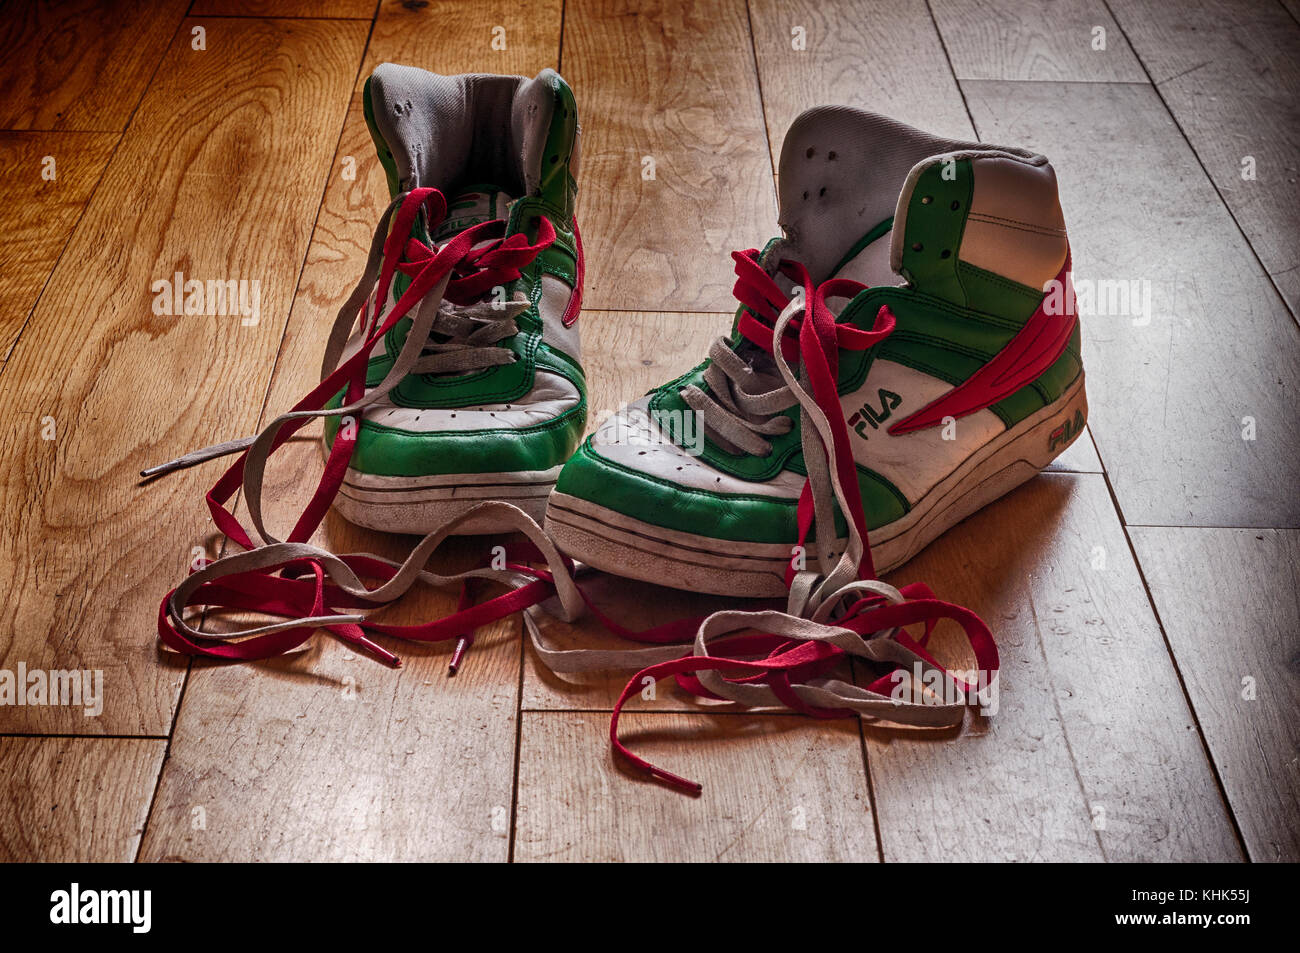 Botas fila (zapatillas) que han sido usadas y comienzan a mostrar su edad con cordones de colores. Sentado en un suelo de madera Fotografía de stock - Alamy